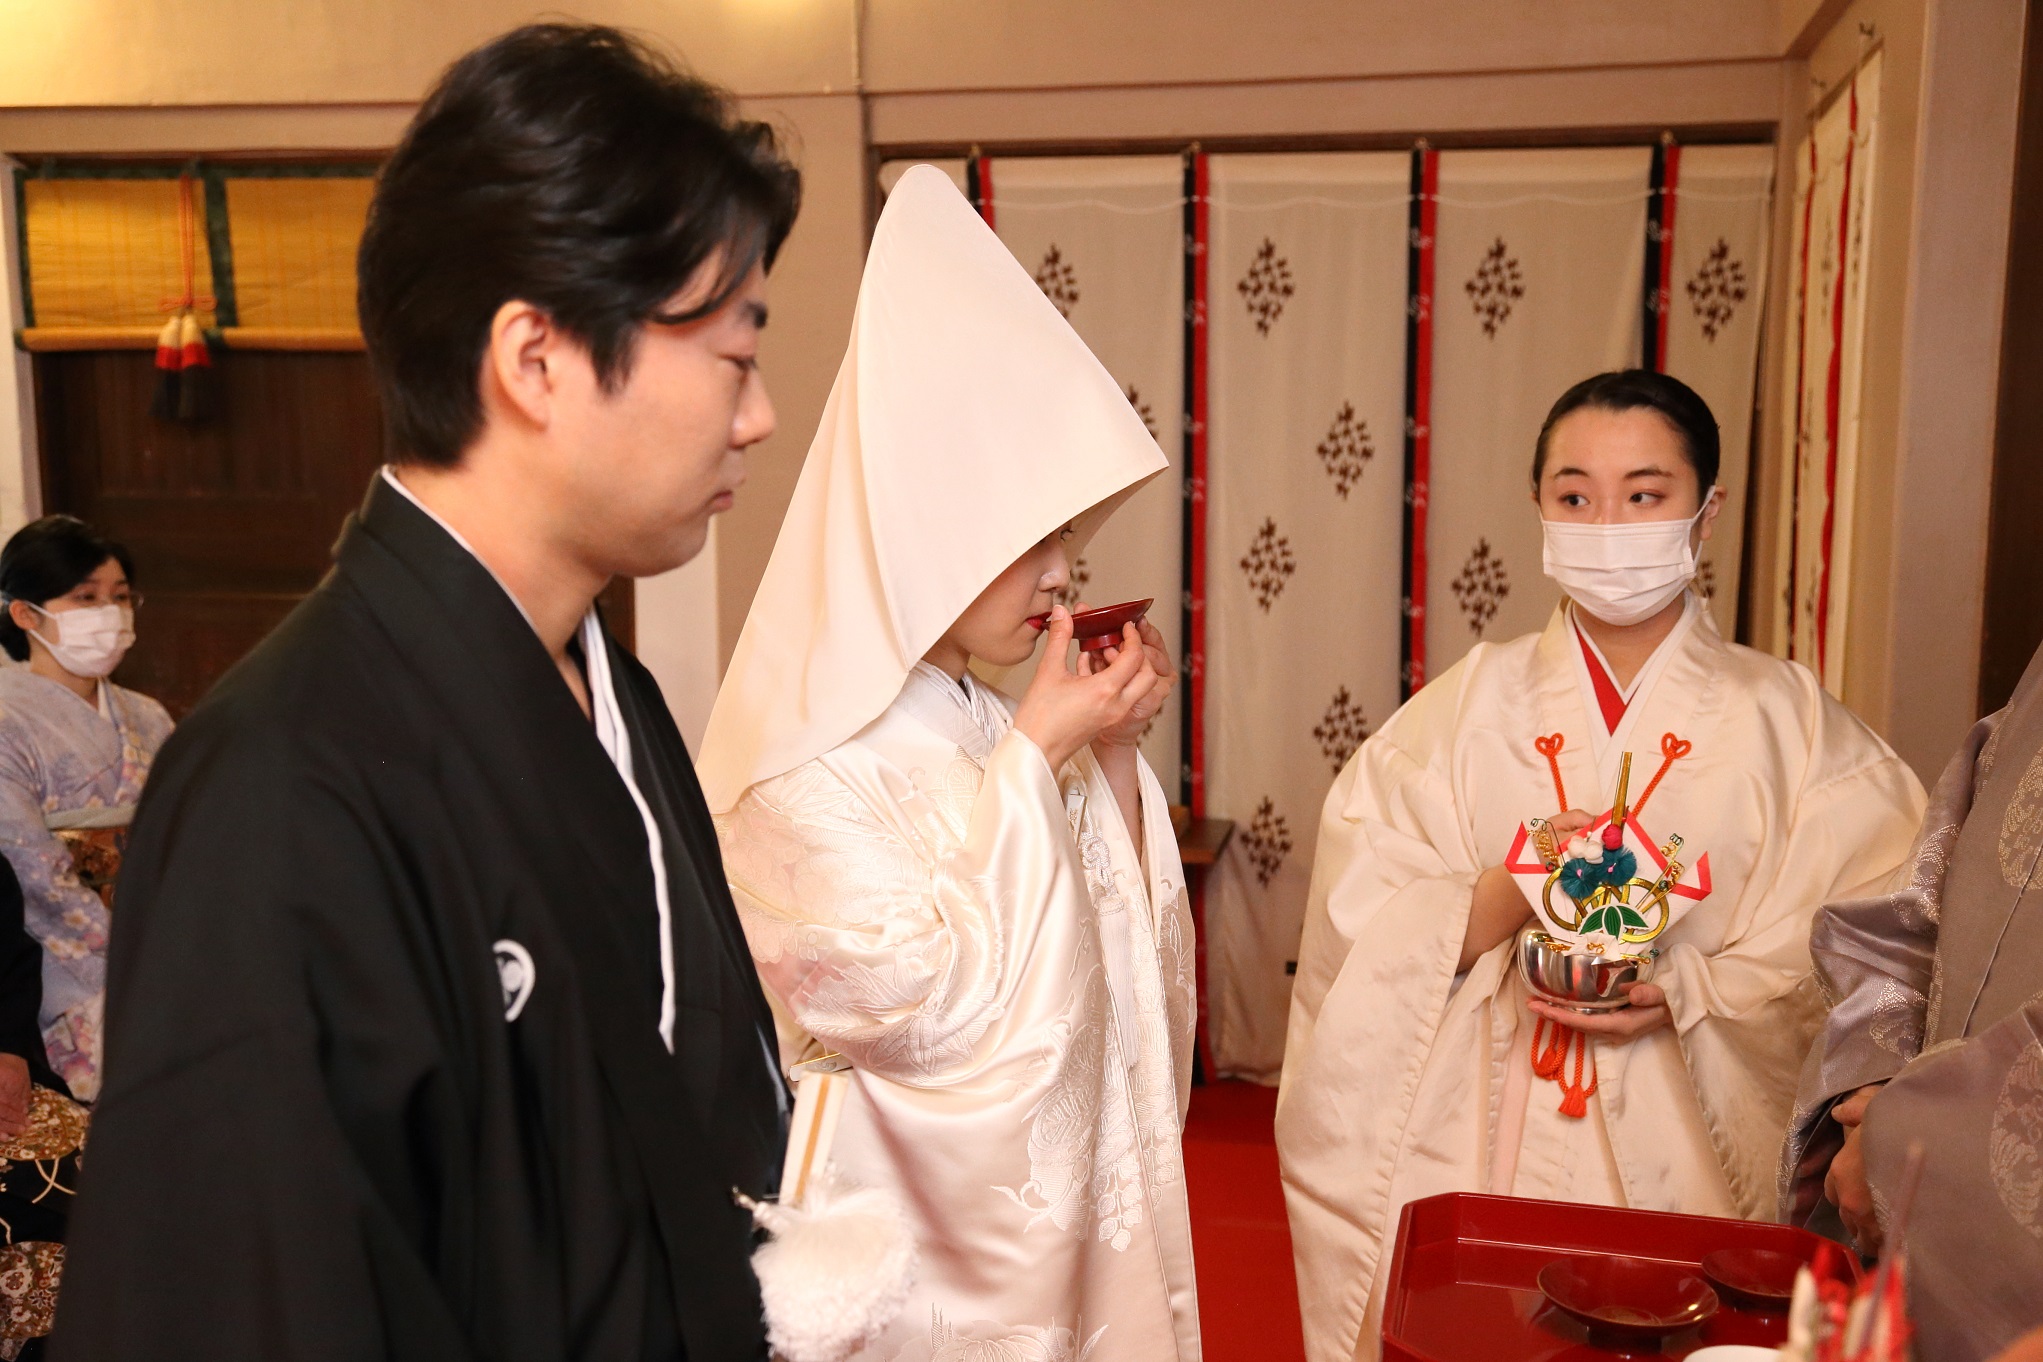 日本橋日枝神社での挙式案内 | 神社結婚式プロデュース 京鐘